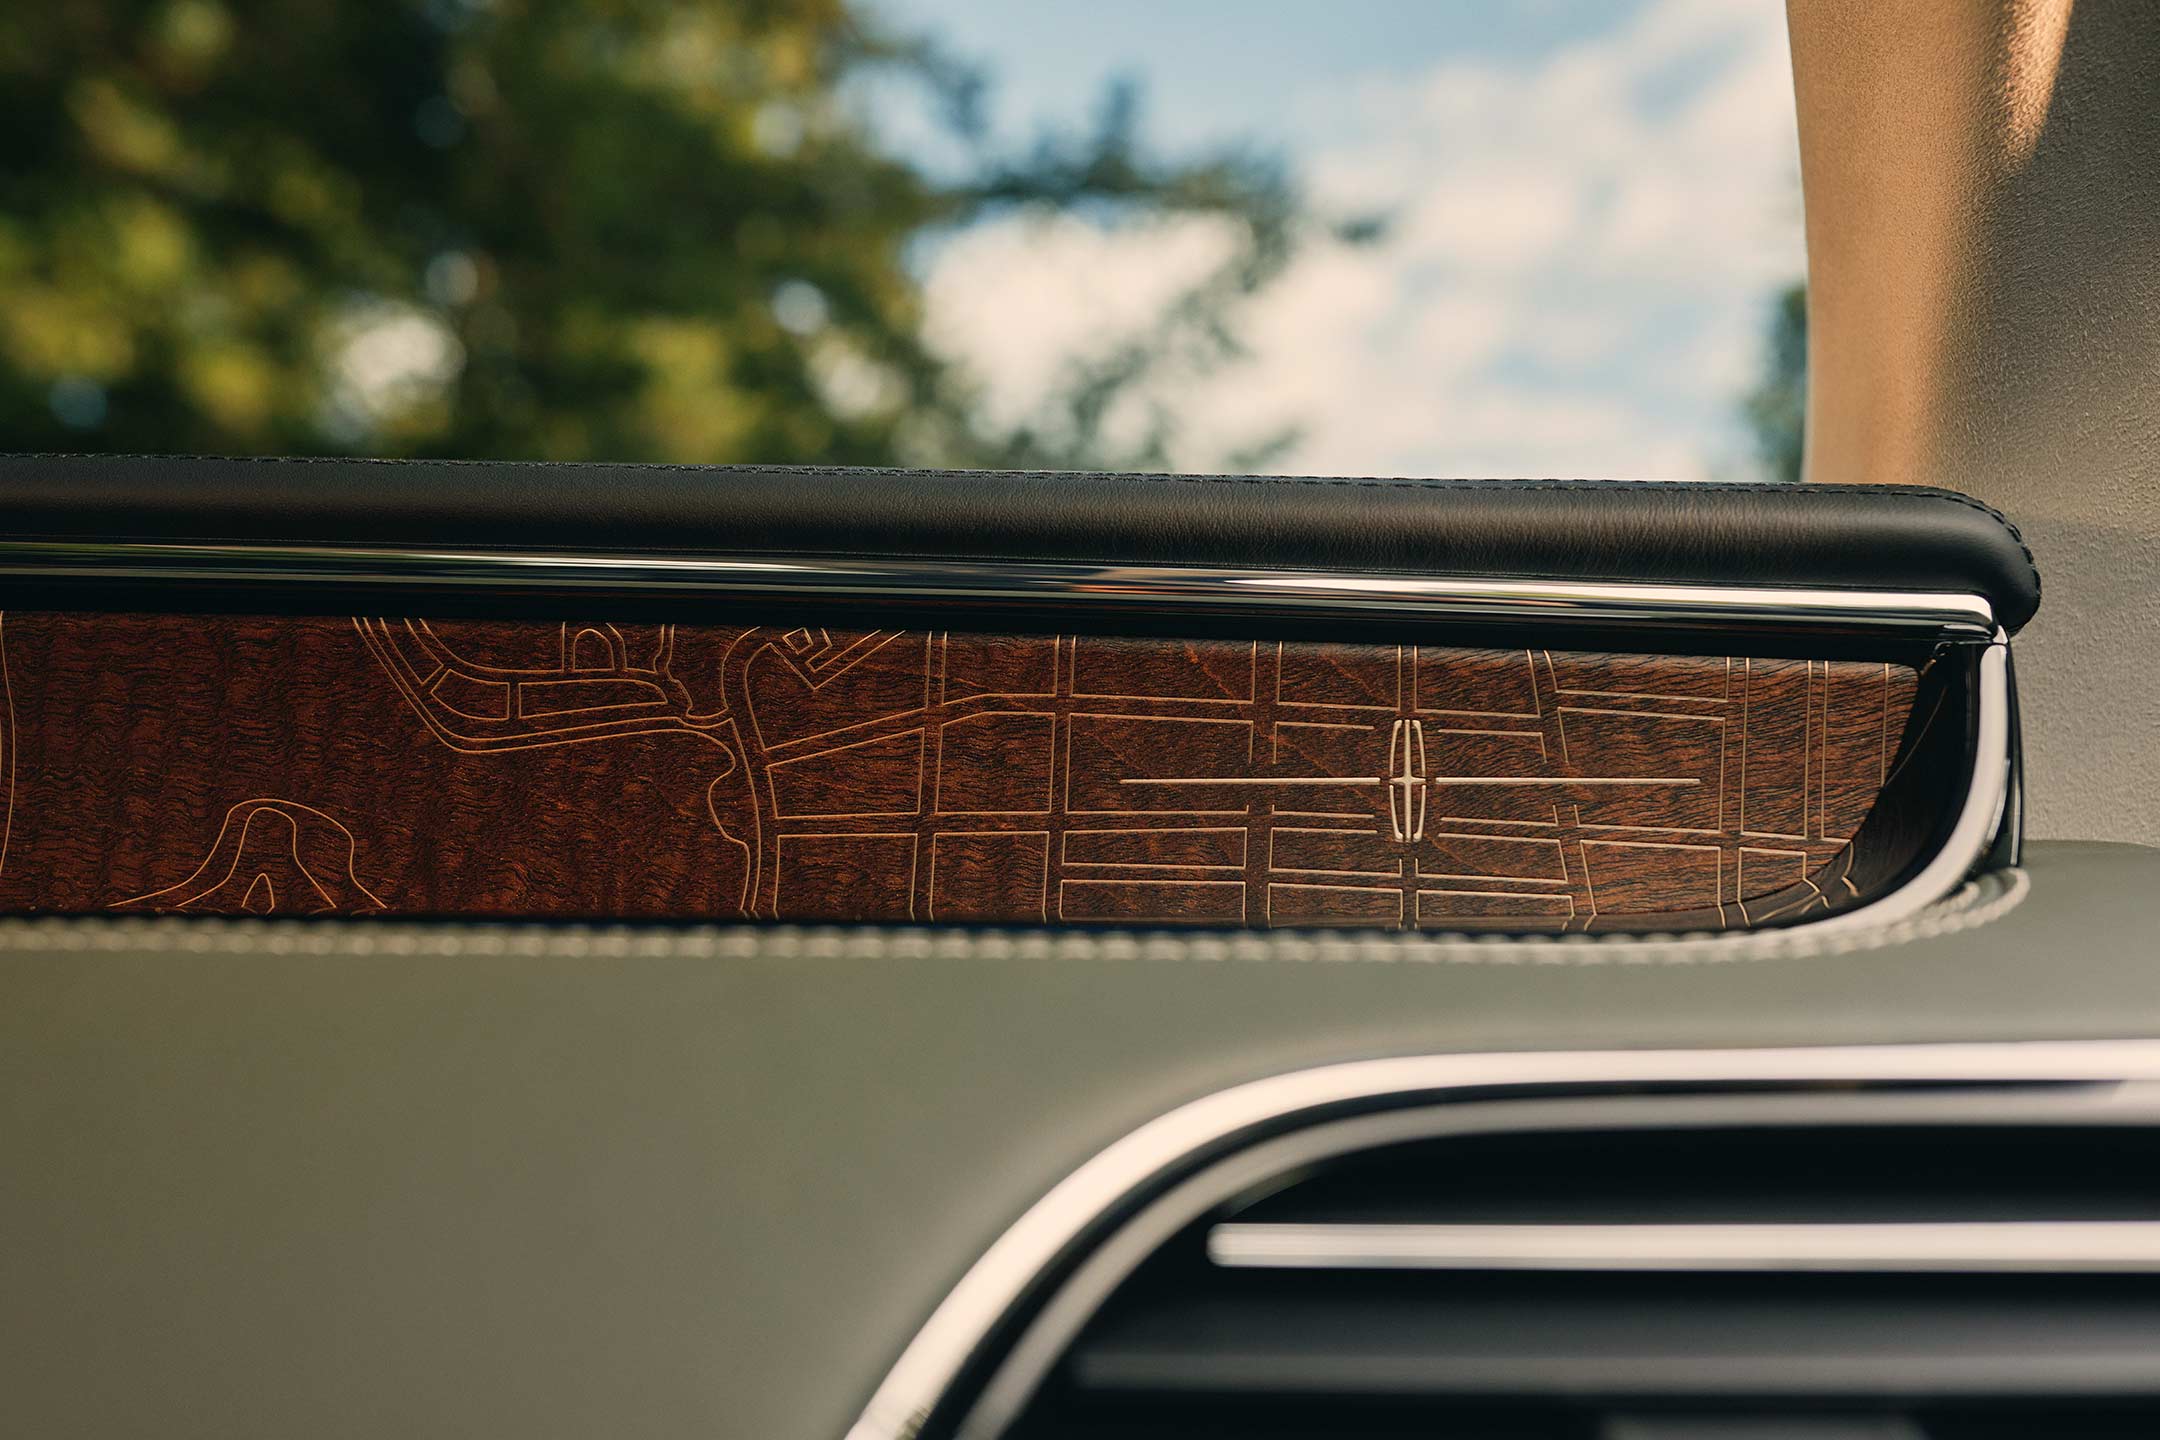 Las incrustaciones en madera grabadas en láser en el tablero muestran senderos de Central Park y el logotipo de Lincoln.